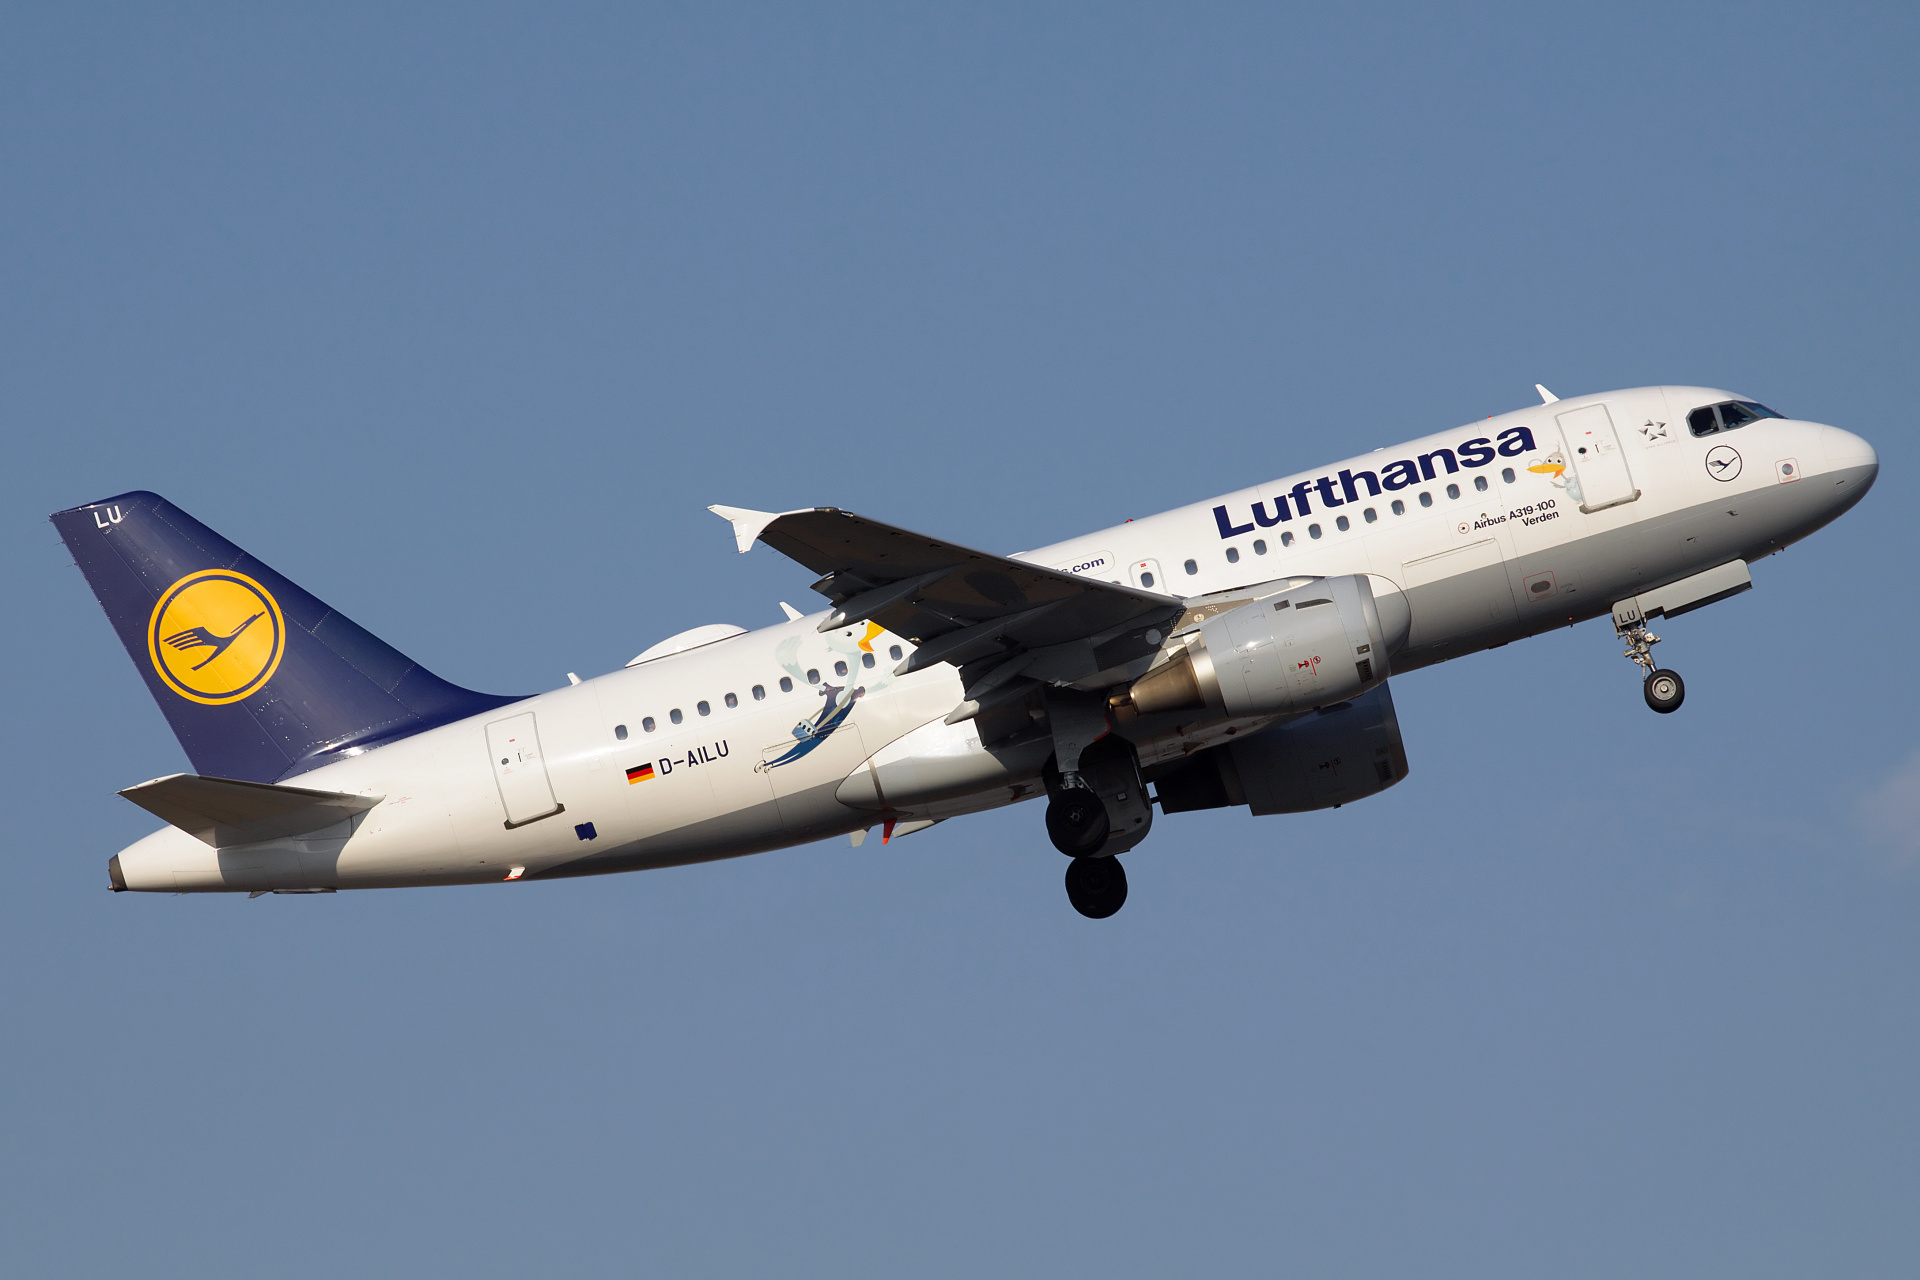 D-AILU (JetFriends livery) (Aircraft » EPWA Spotting » Airbus A319-100 » Lufthansa)